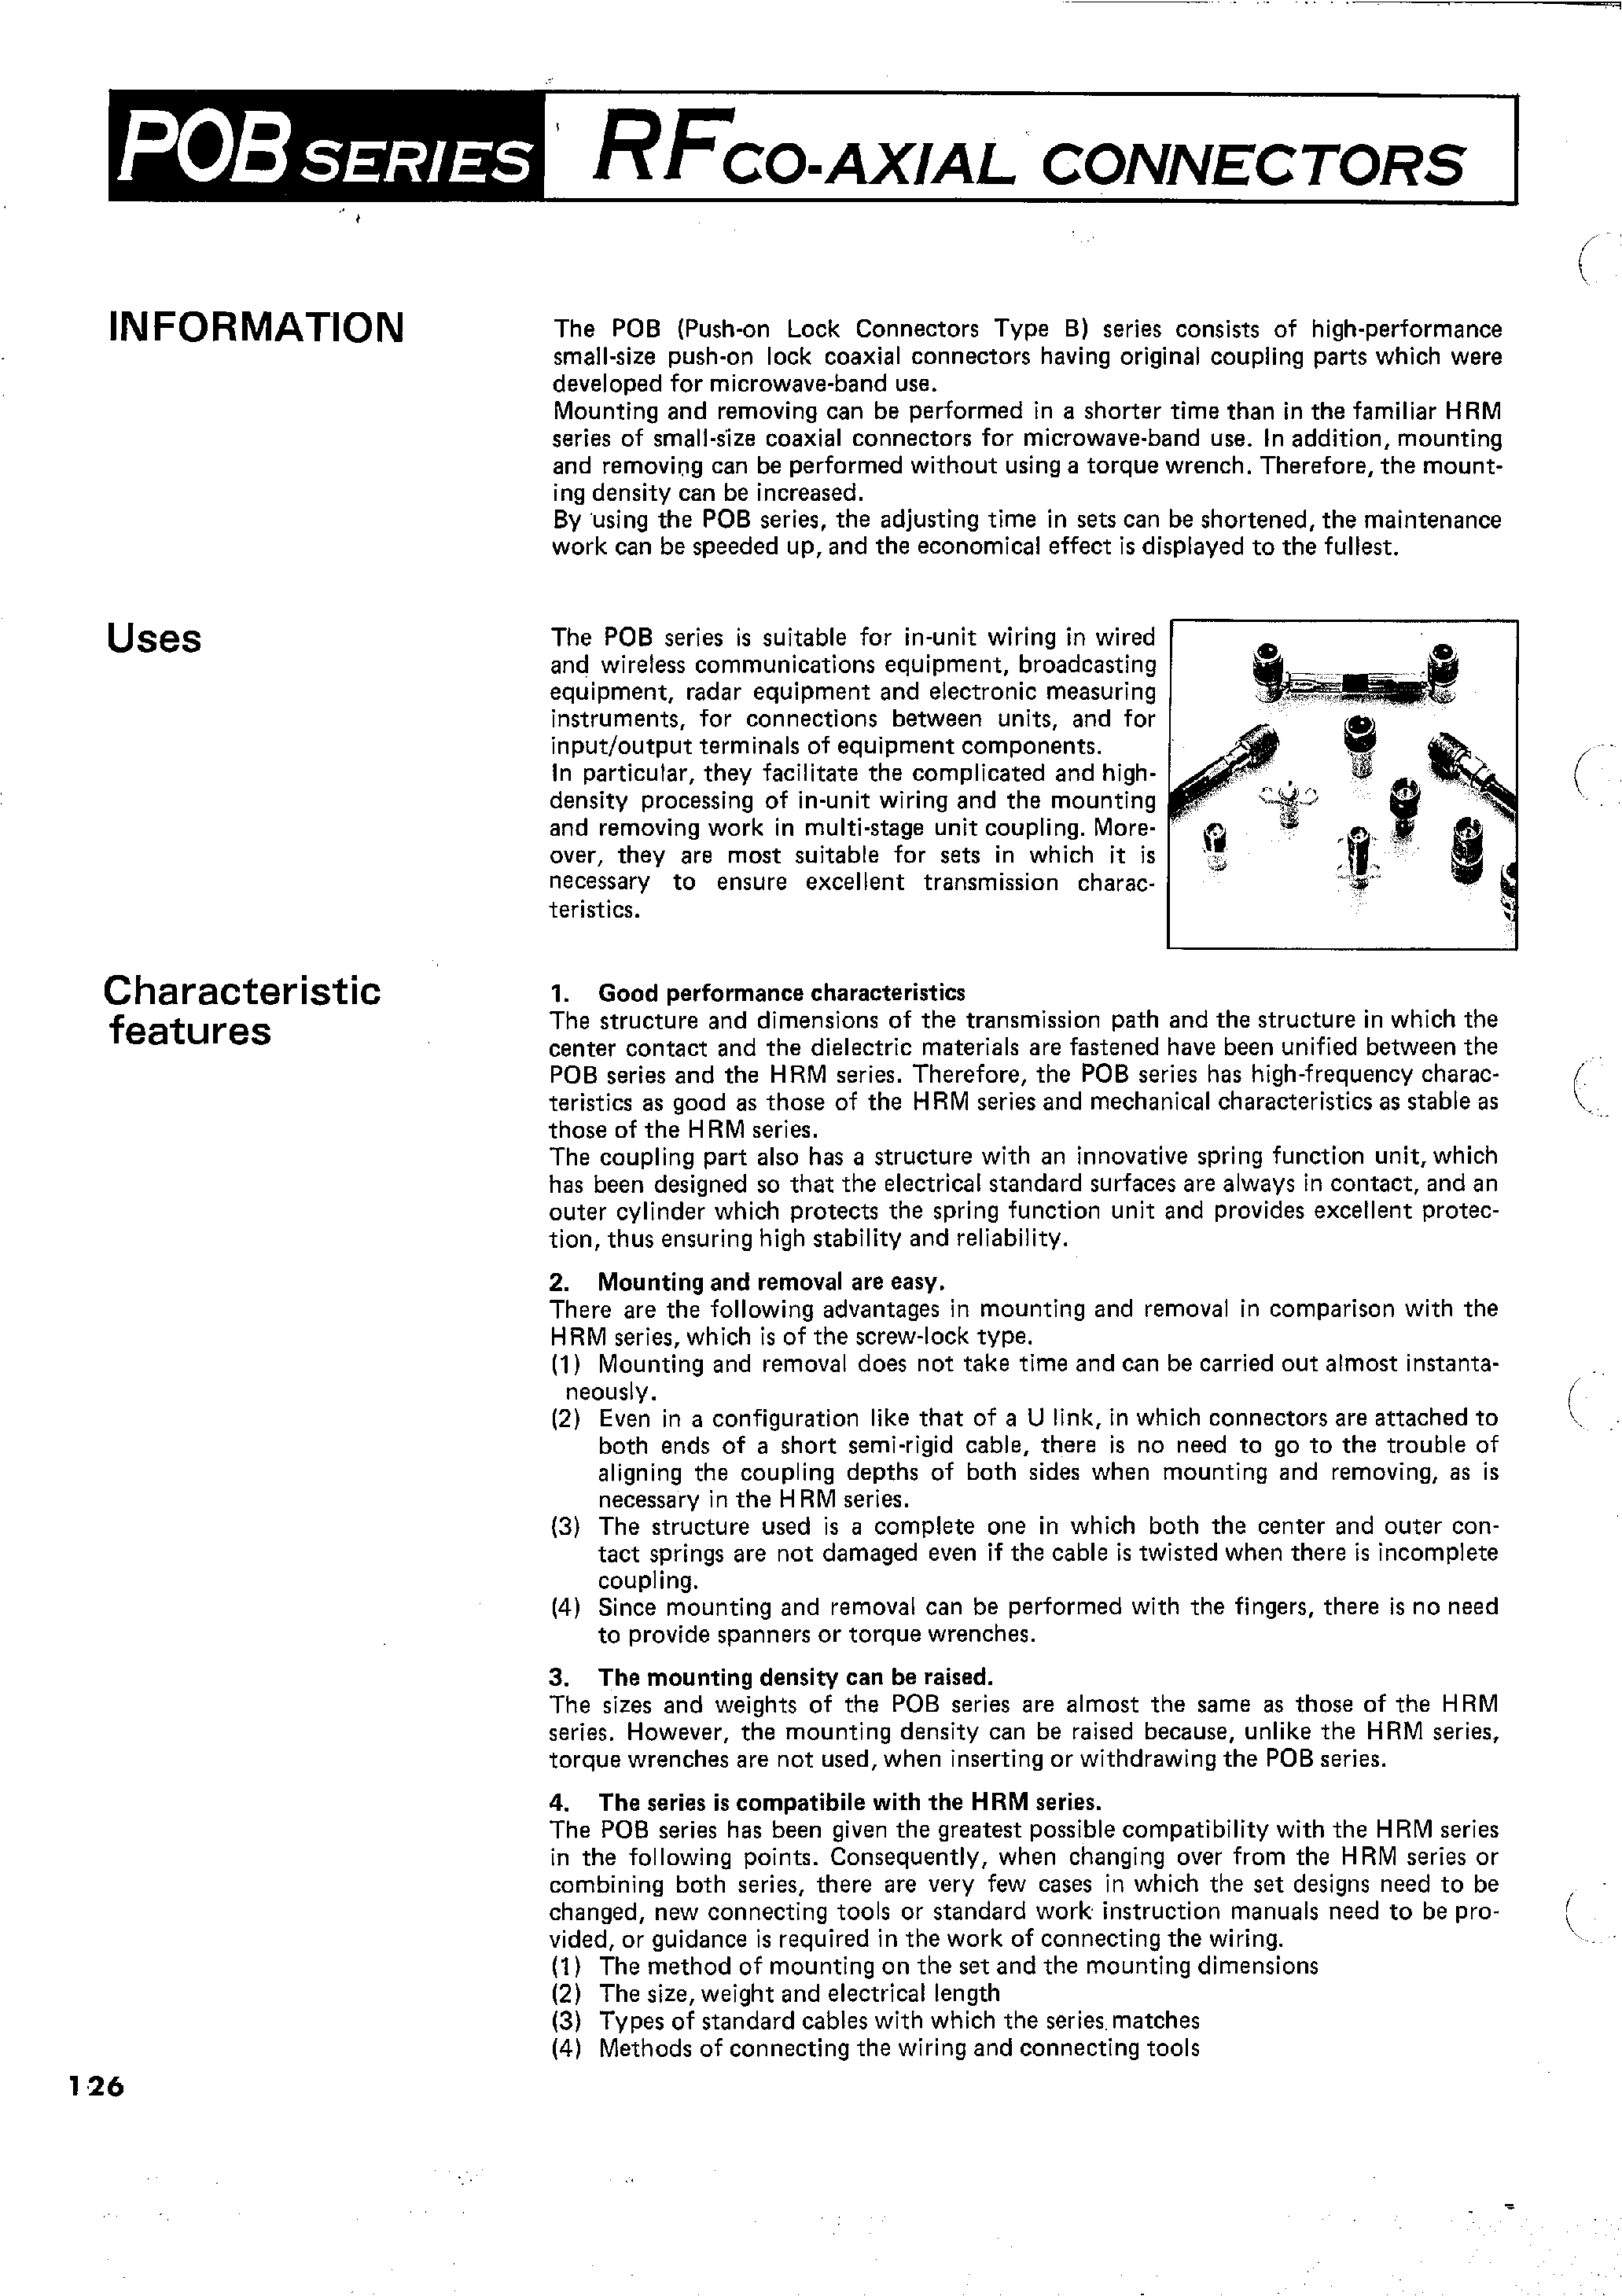 Datasheet POB-P-85 - RFCO-AXIAL CONNECTORS page 1